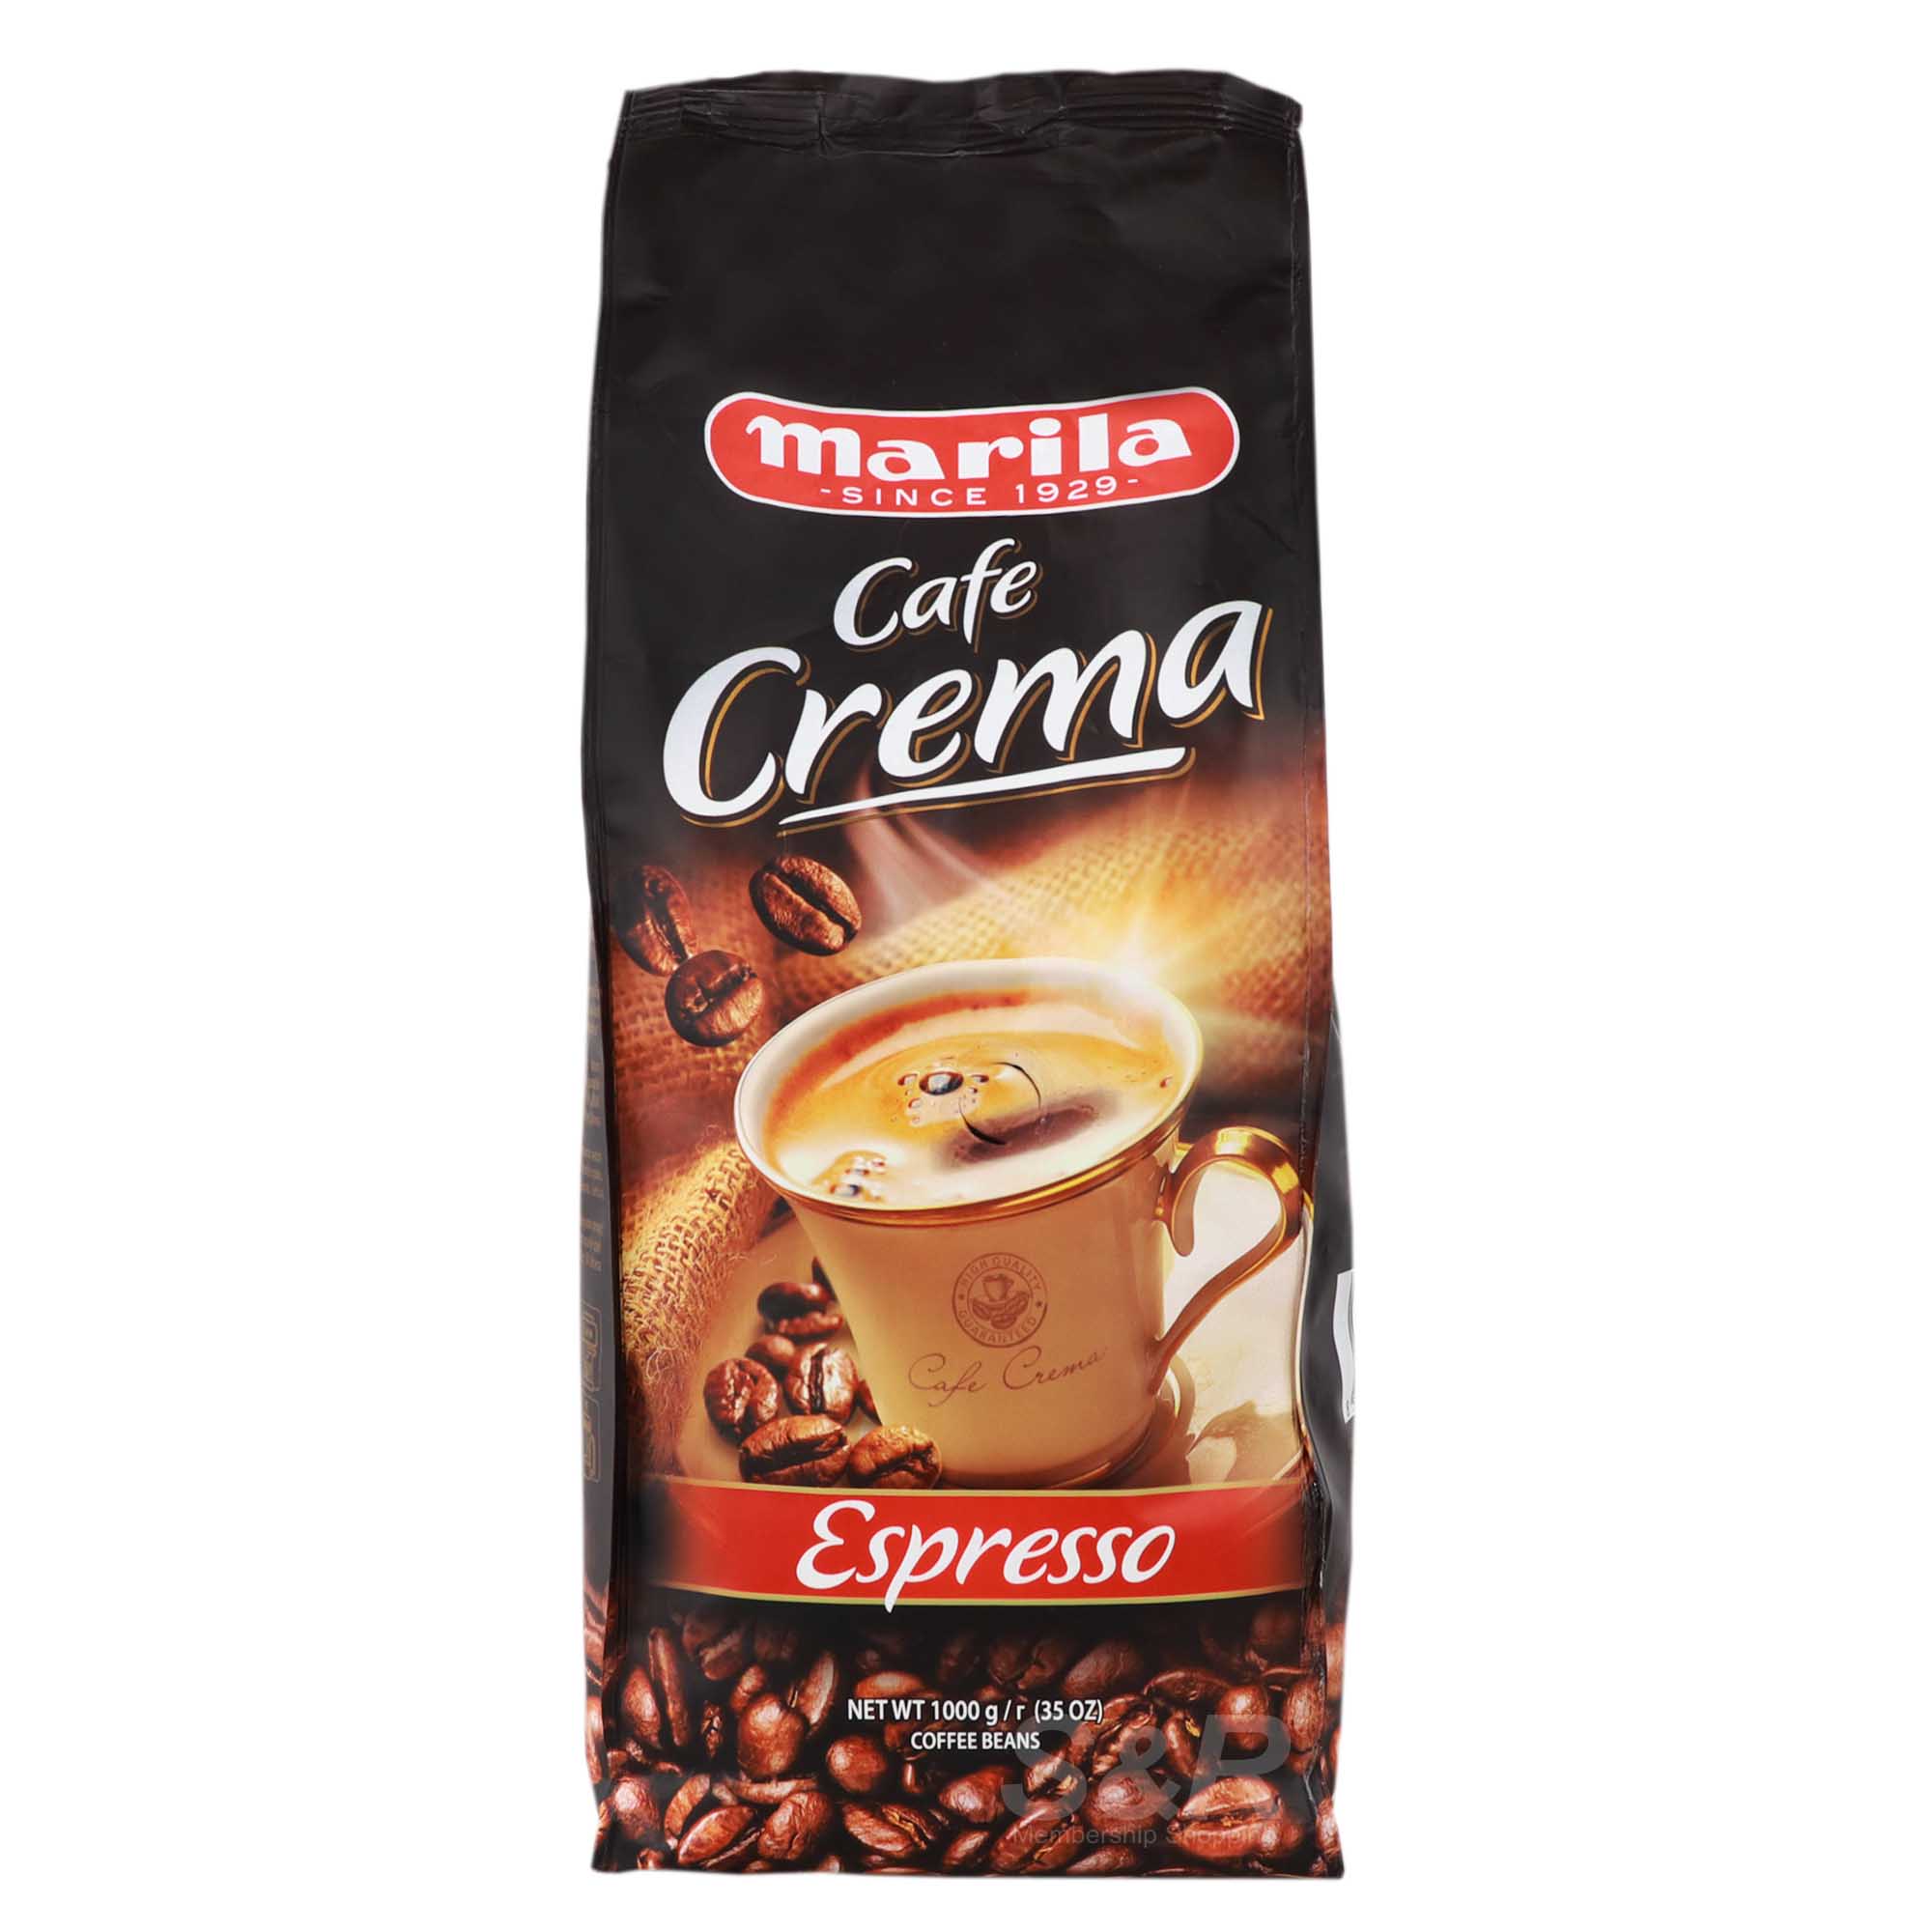 Marila Cafe Crema Espresso 1000g